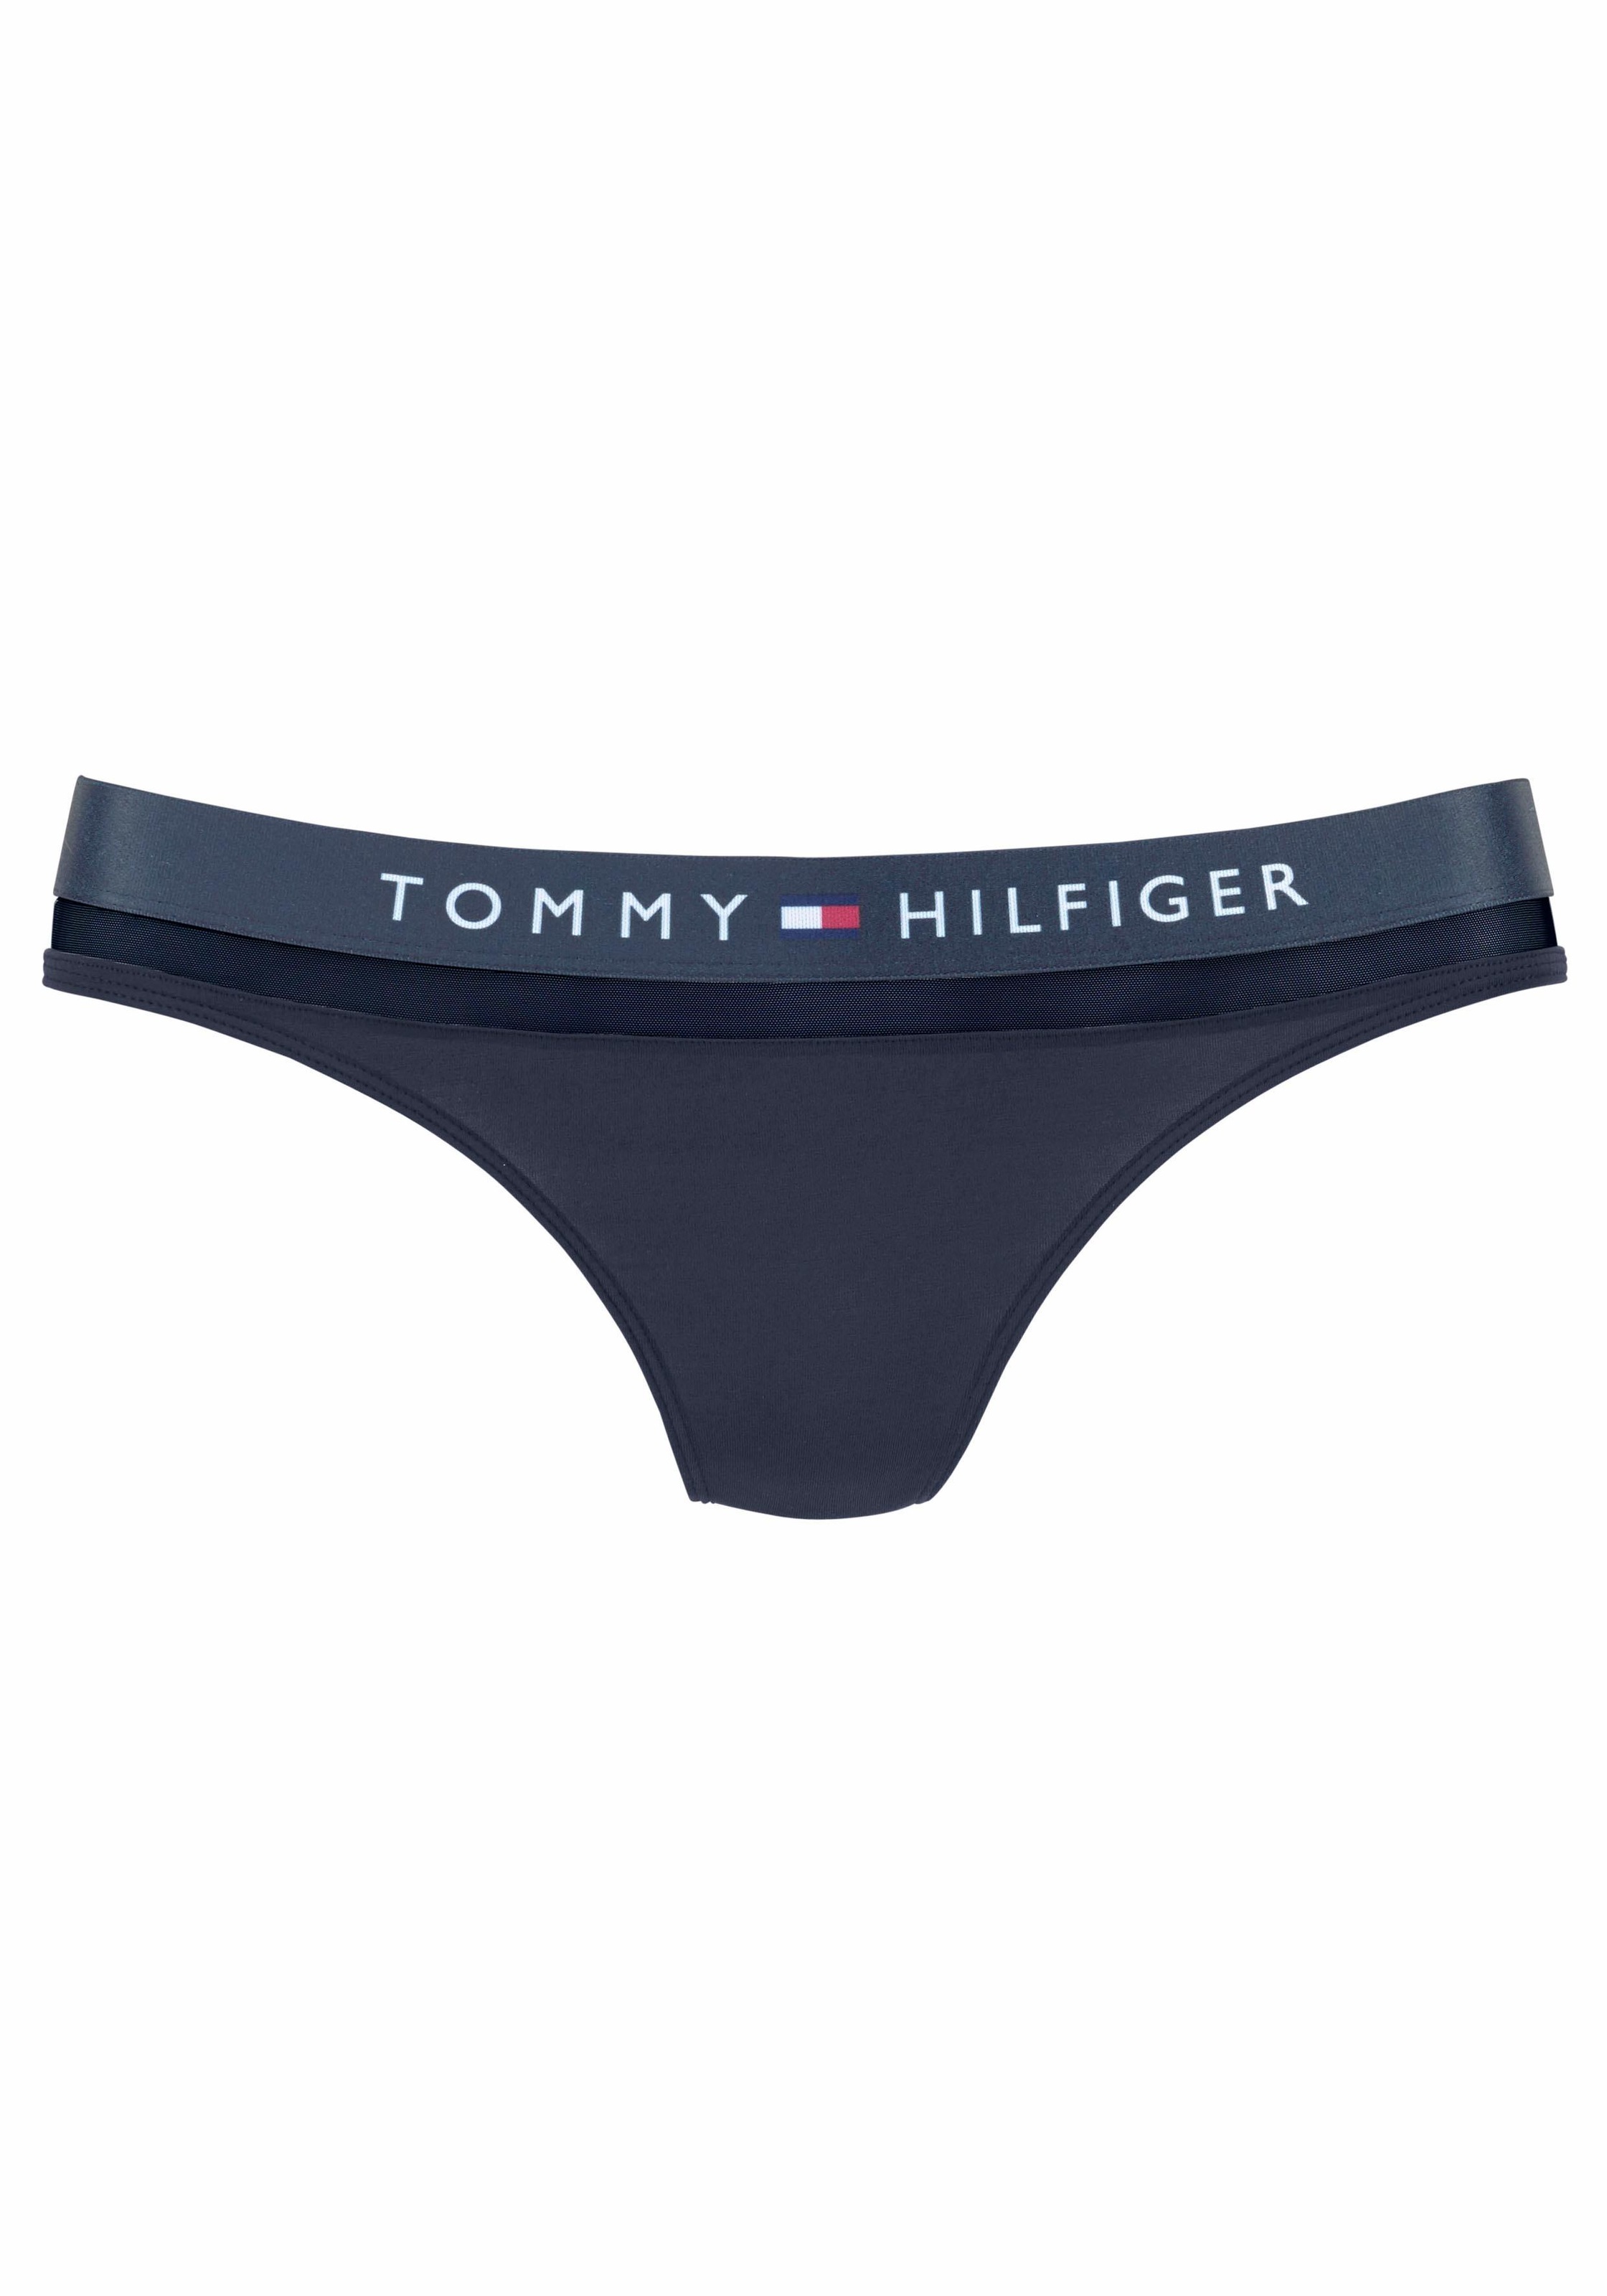 Mesheinsatz String Tommy Hilfiger leicht transparentem mit Underwear